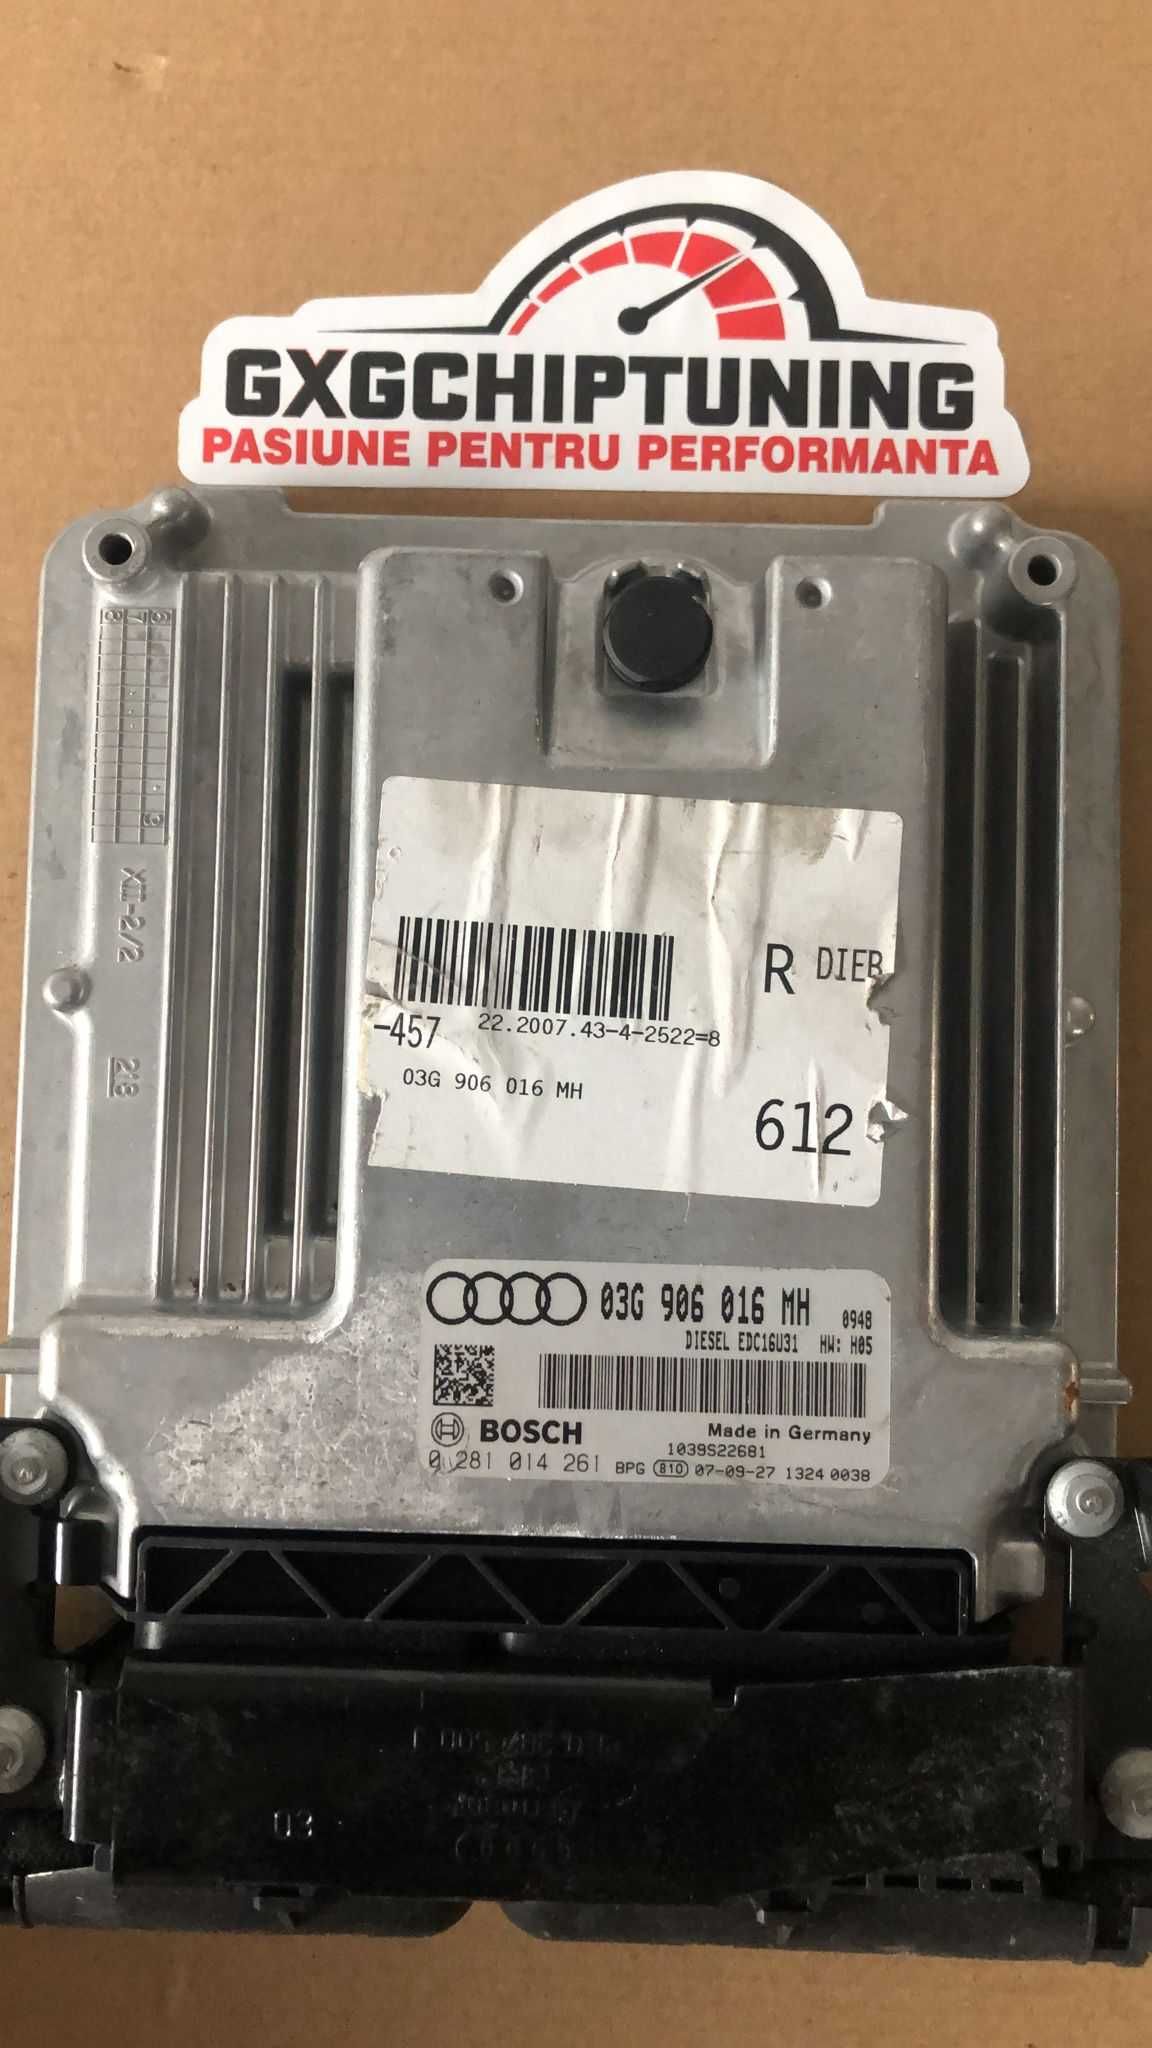 ECU Calculator motor Audi A6 2.0 TDI, cod 0281014261